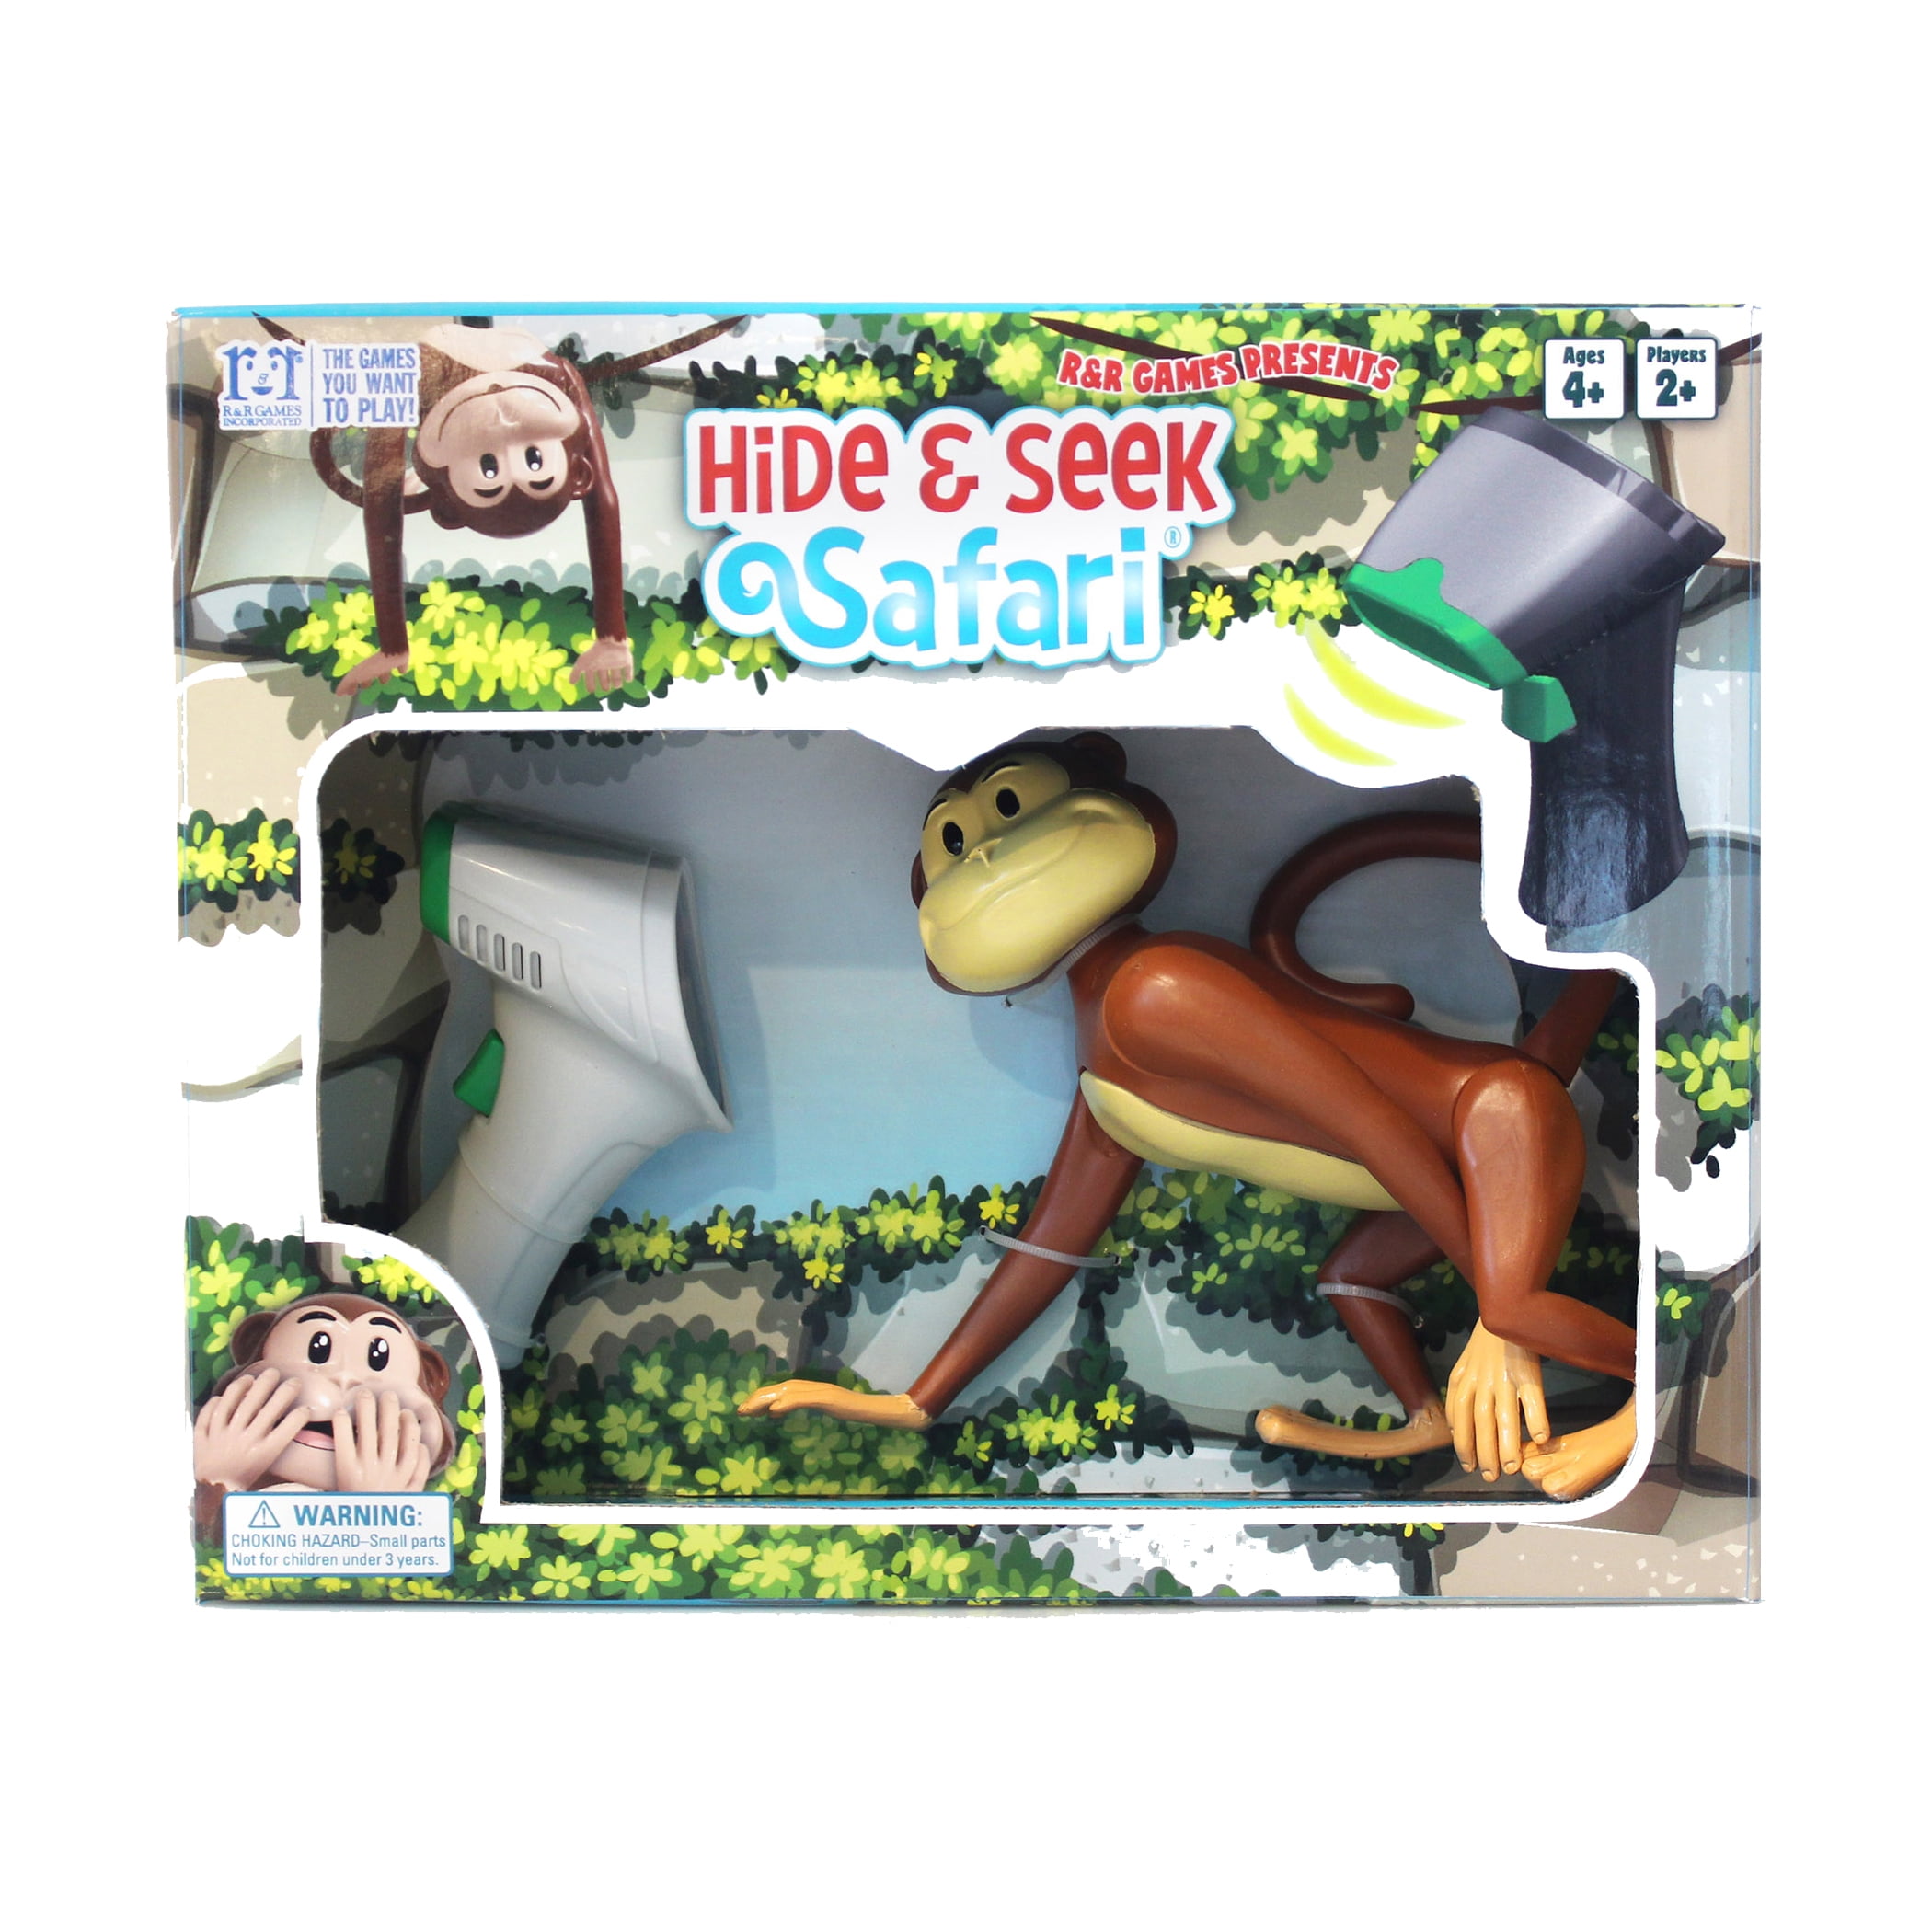 Hide N Seek : Mini Games on the App Store